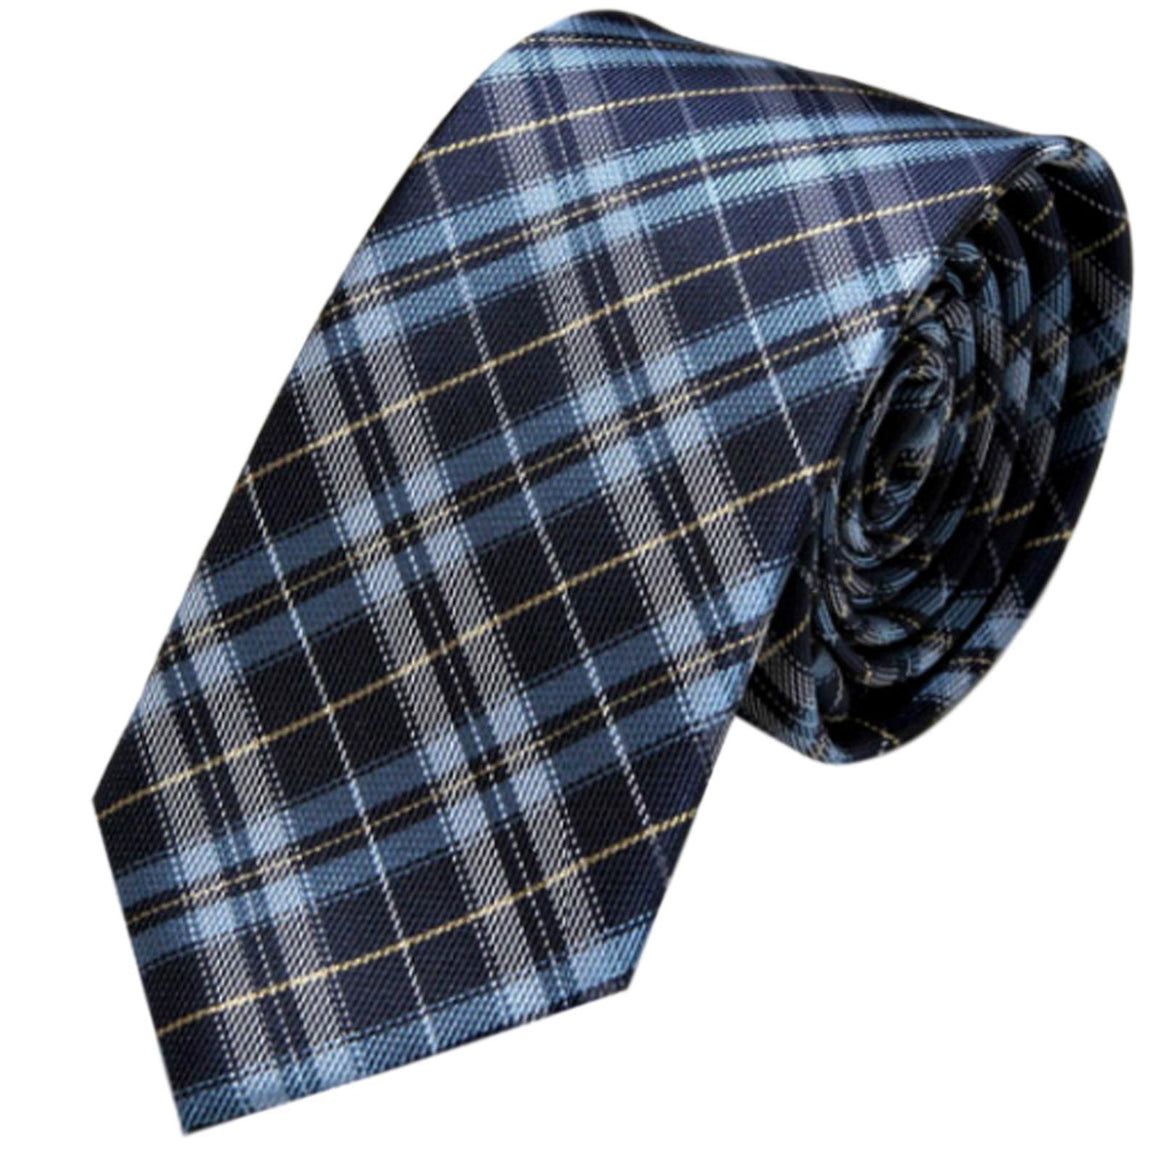 GASSANI 6 cm stretta cravatta da uomo a scacchi blu e bianchi, cravatta vintage con motivo a scacchi